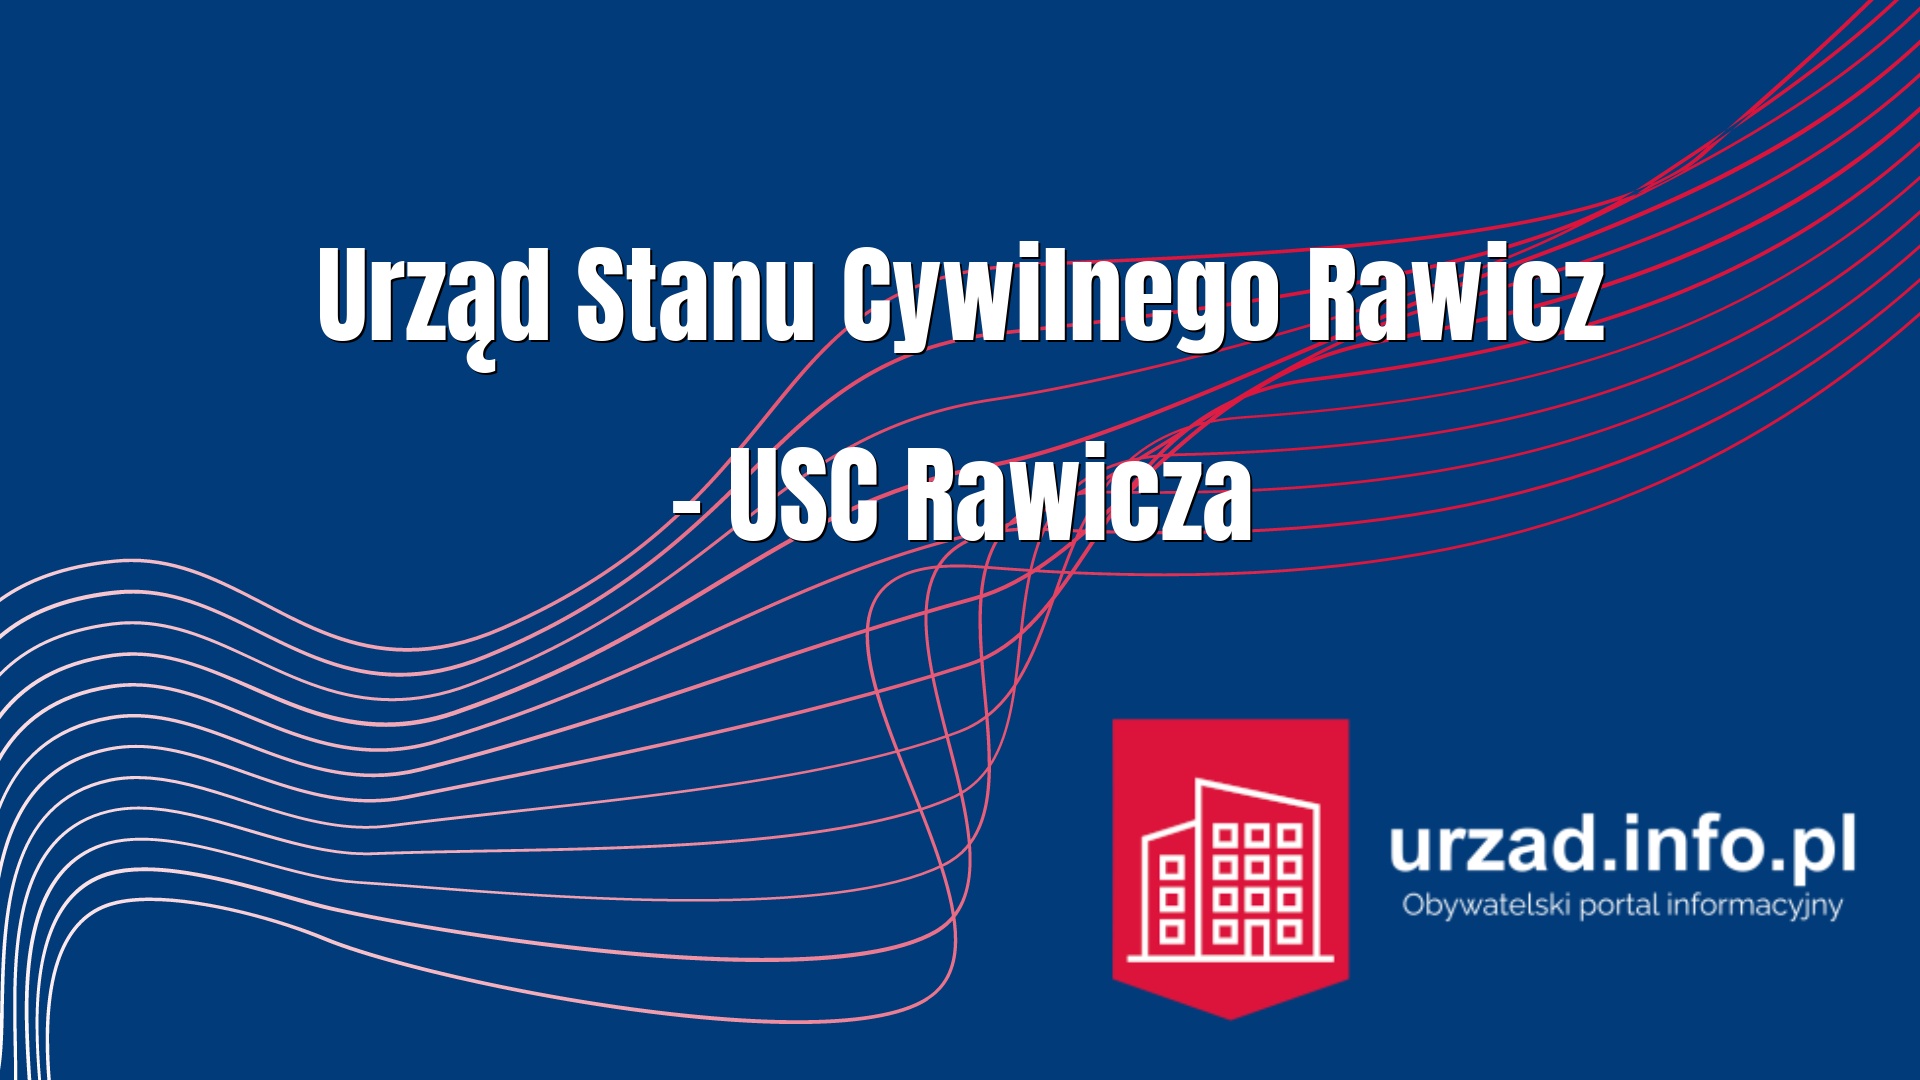 Urząd Stanu Cywilnego Rawicz – USC Rawicza